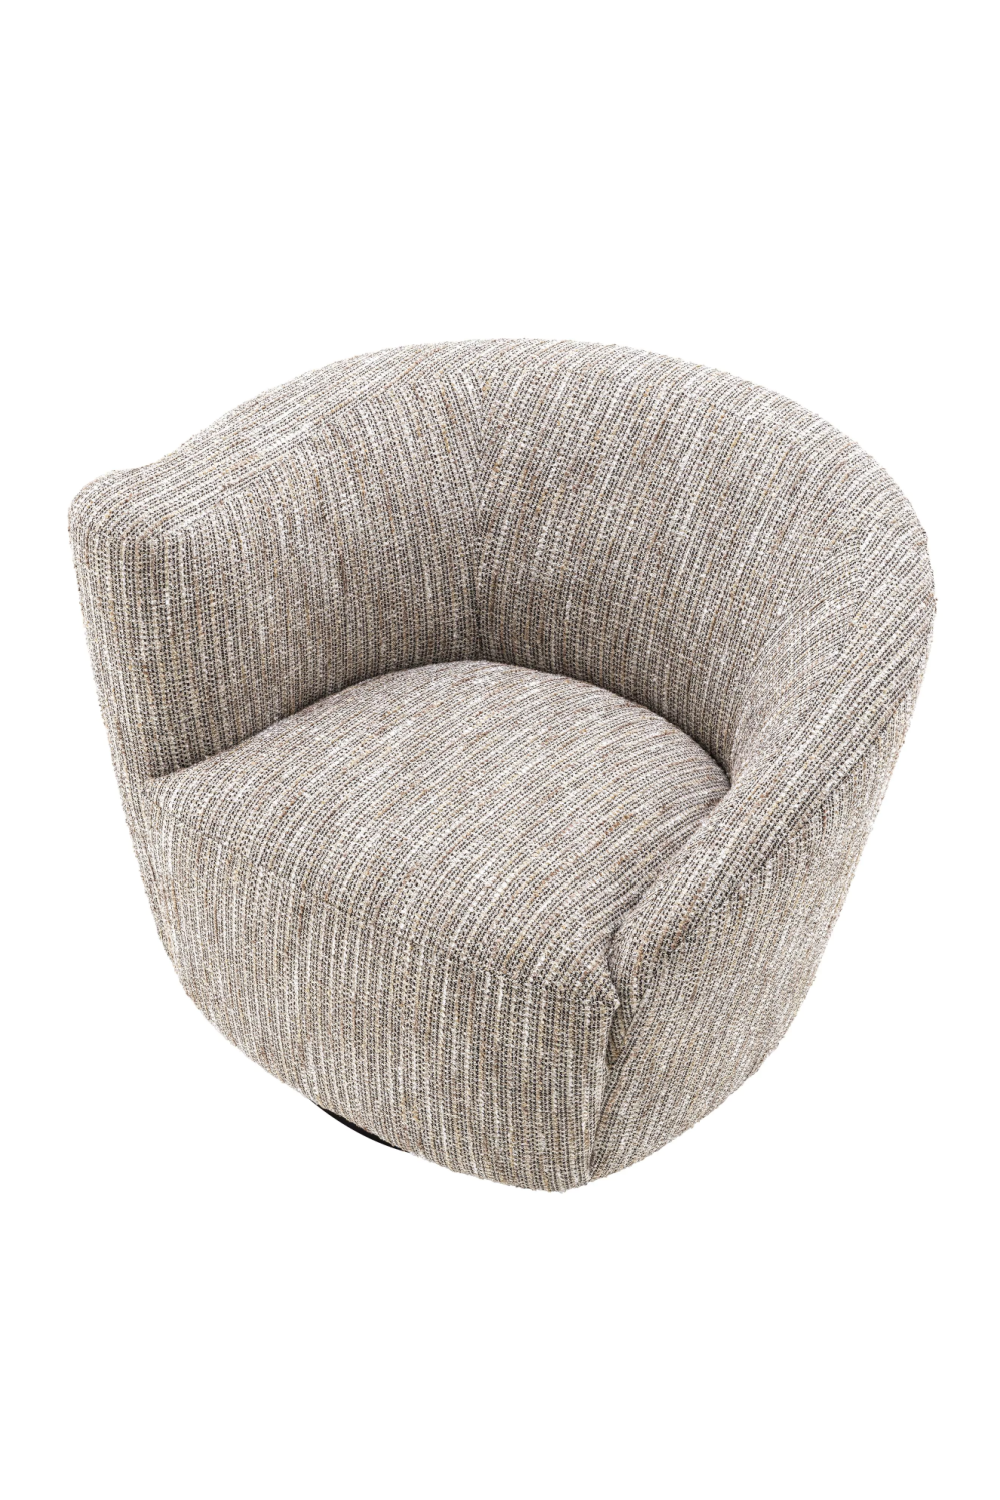 Beige Asymmetrical Swivel Chair | Eichholtz Colin | Oroa.com